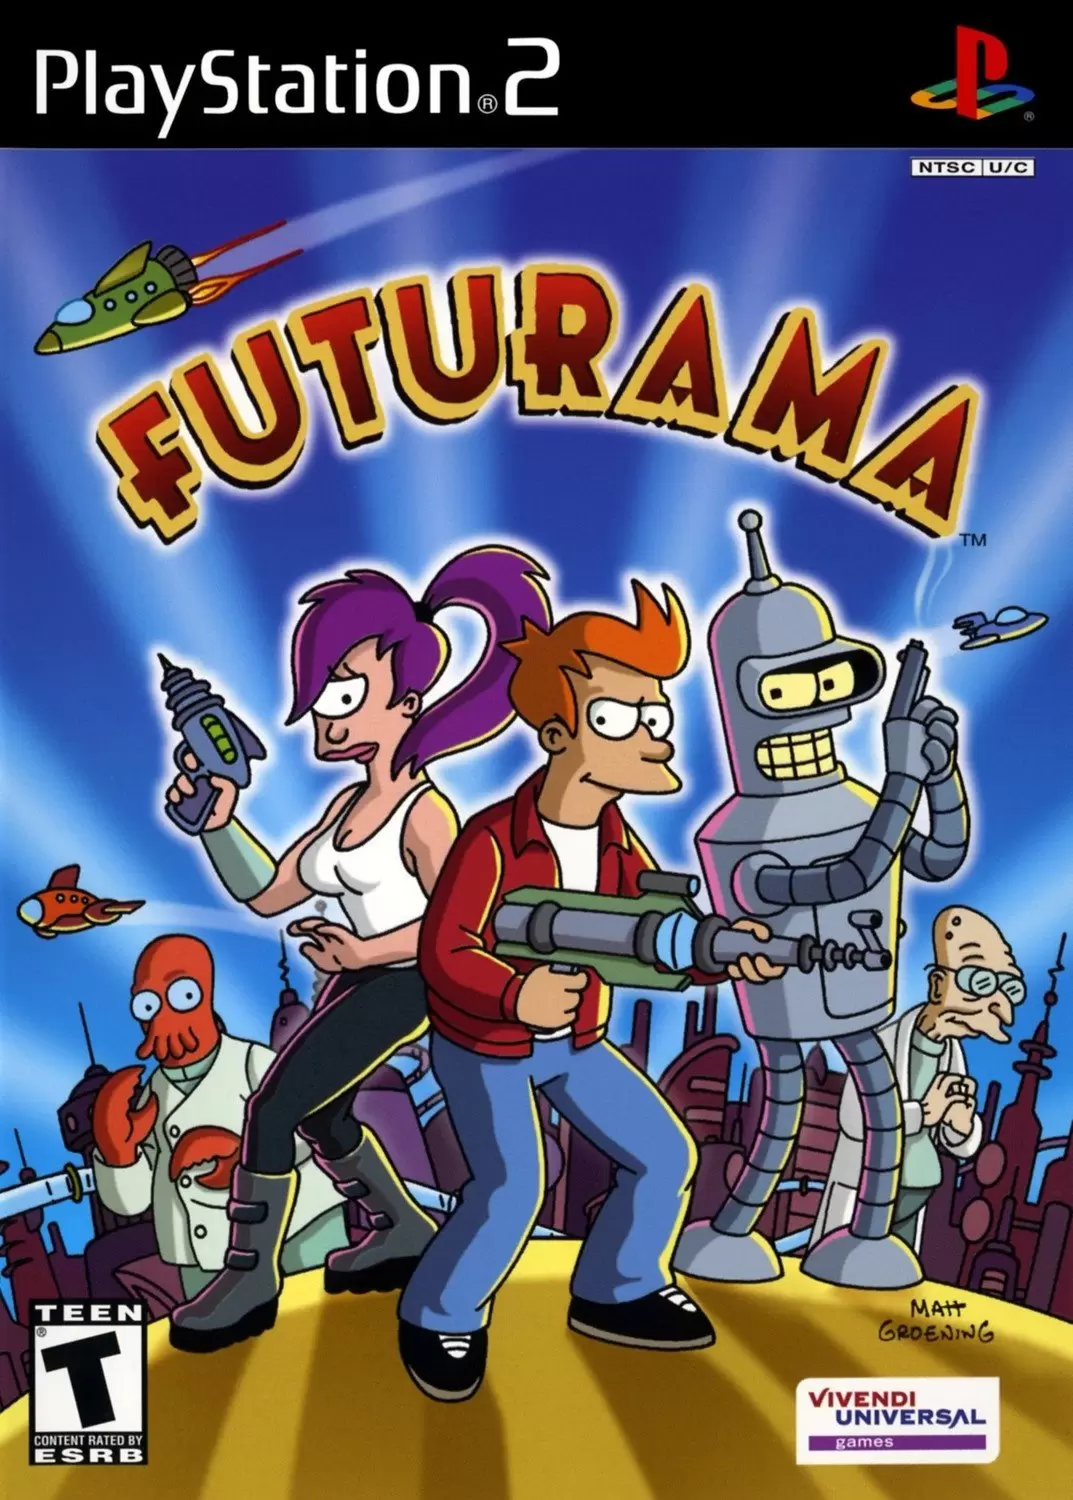 Jeux PS2 - Futurama